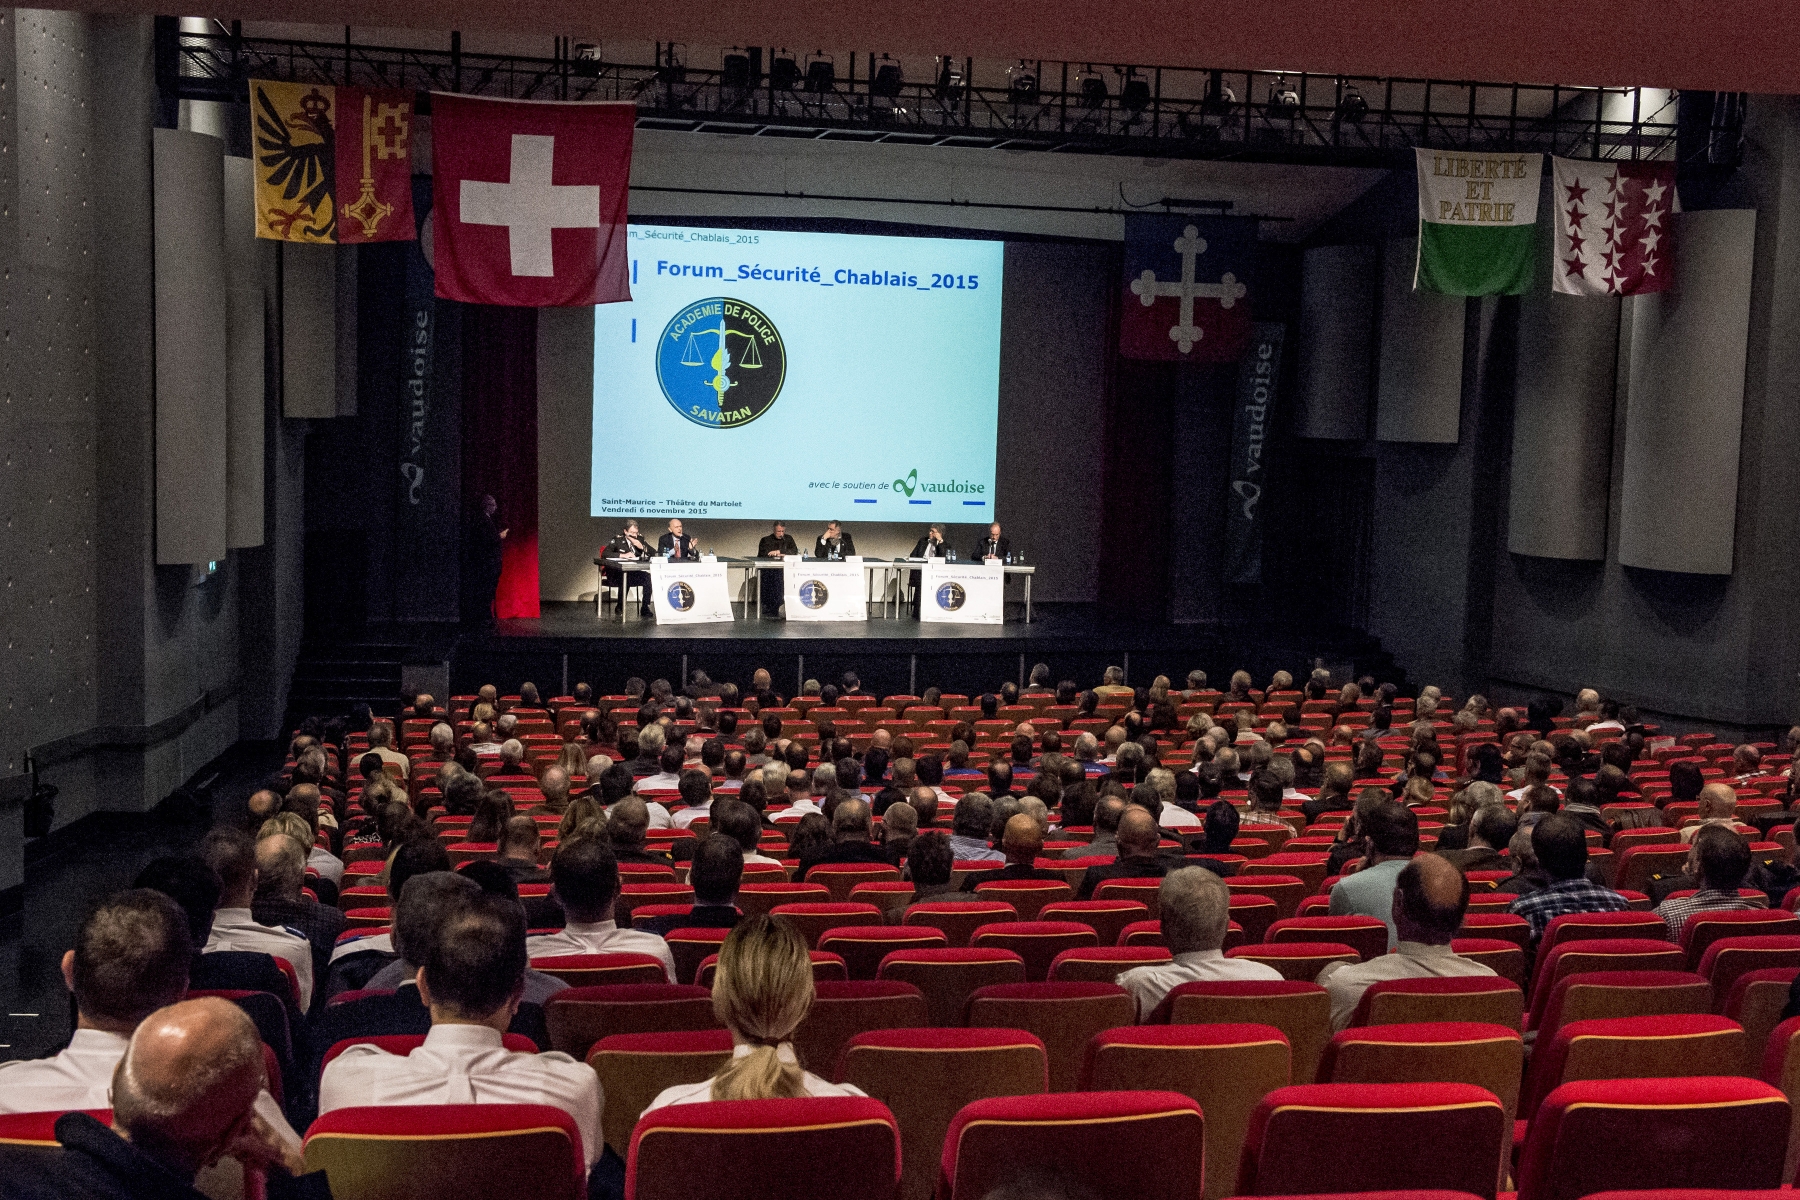 Le Forum Sécurité Chablais 2015 s'est intéressé aux liens entre sécurité et immigration.